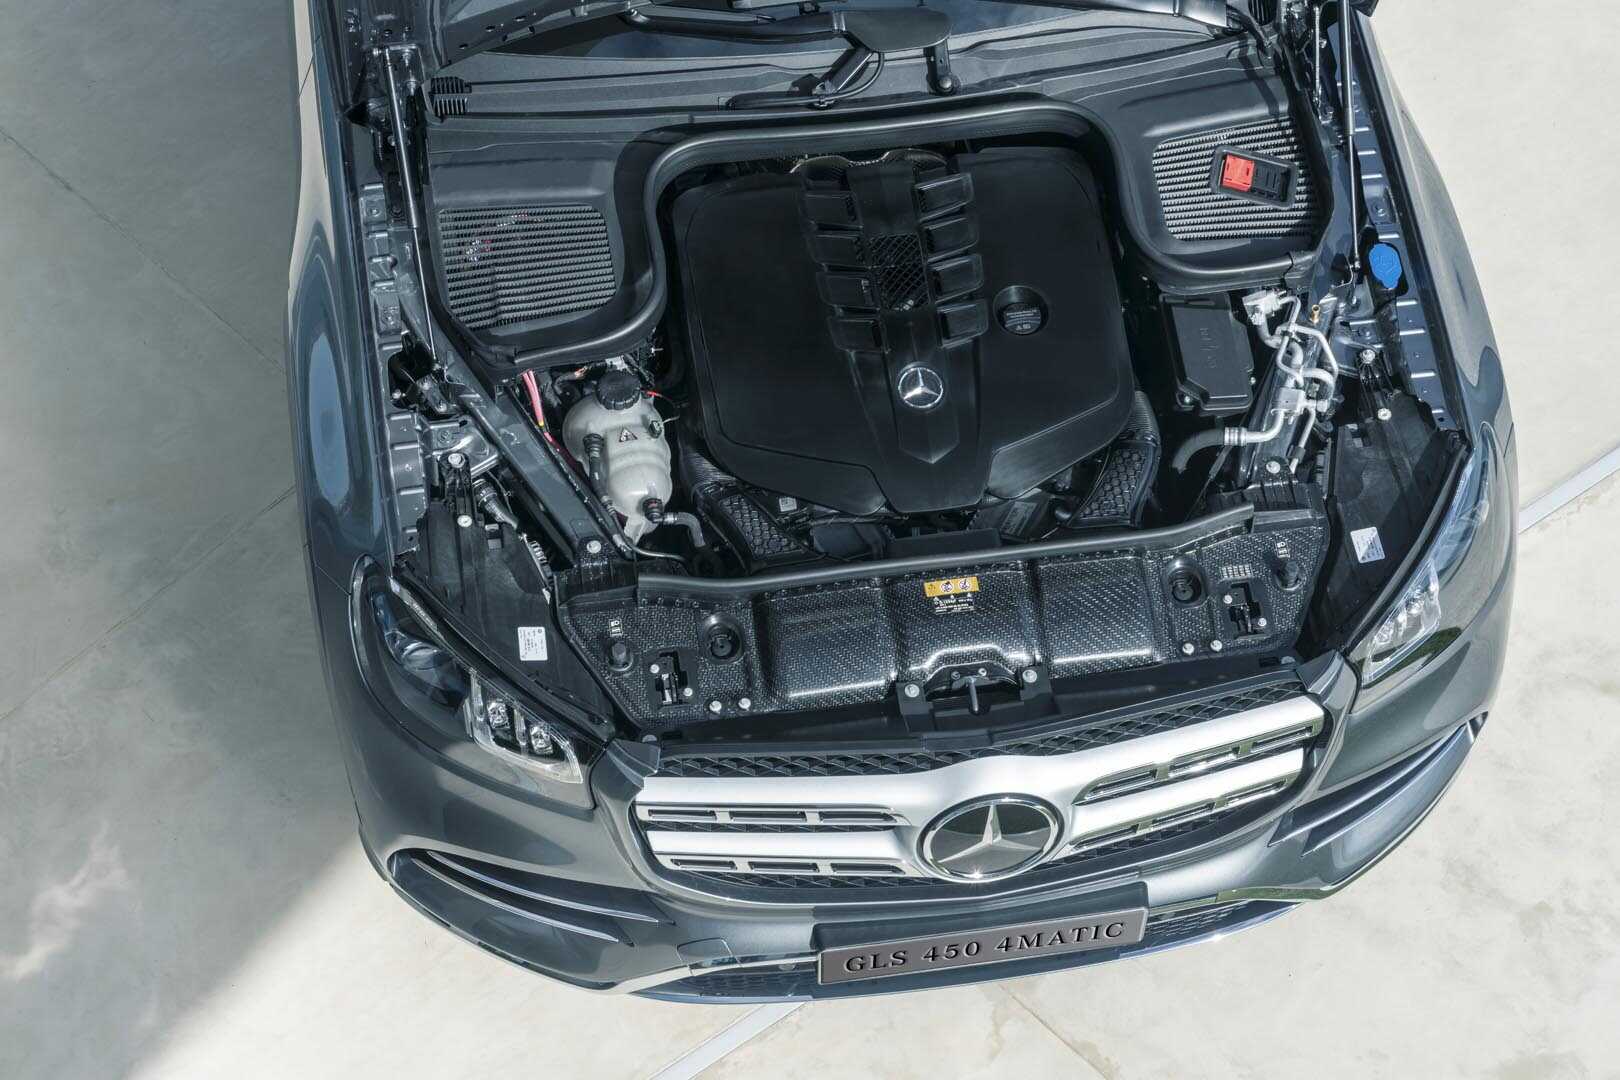 Tìm hiểu về ĐỘNG CƠ trang bị trên xe Mercedes GLS 450 4Matic